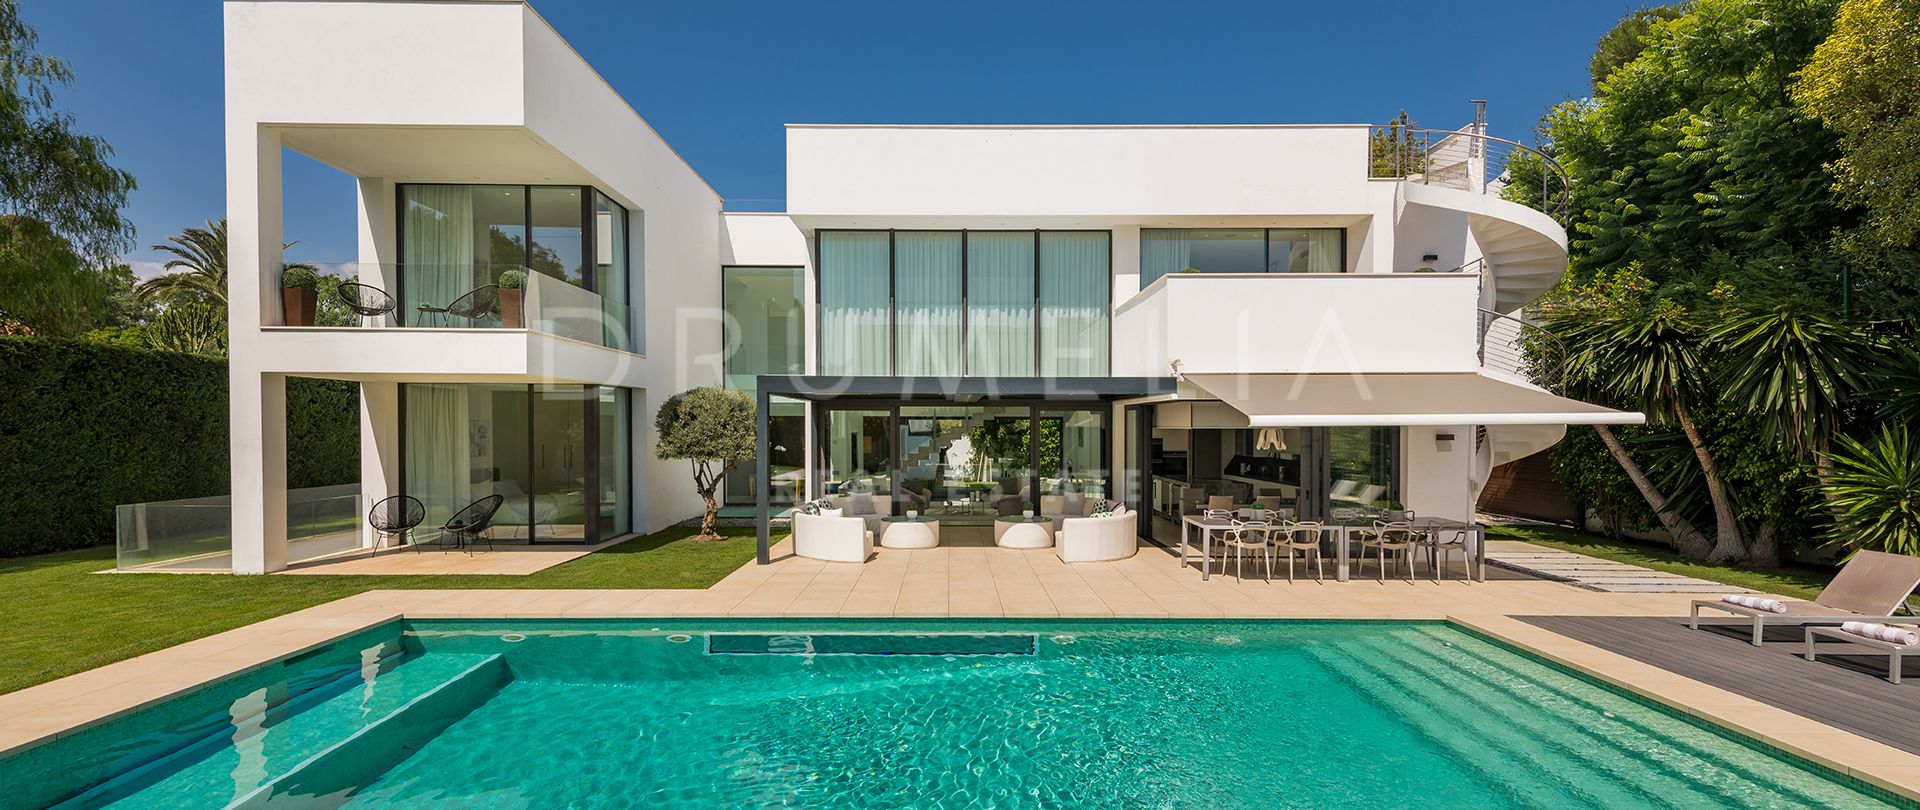 Nieuw Uitzonderlijk modern luxe huis aan het strand in Puerto Banus te koop, Marbella